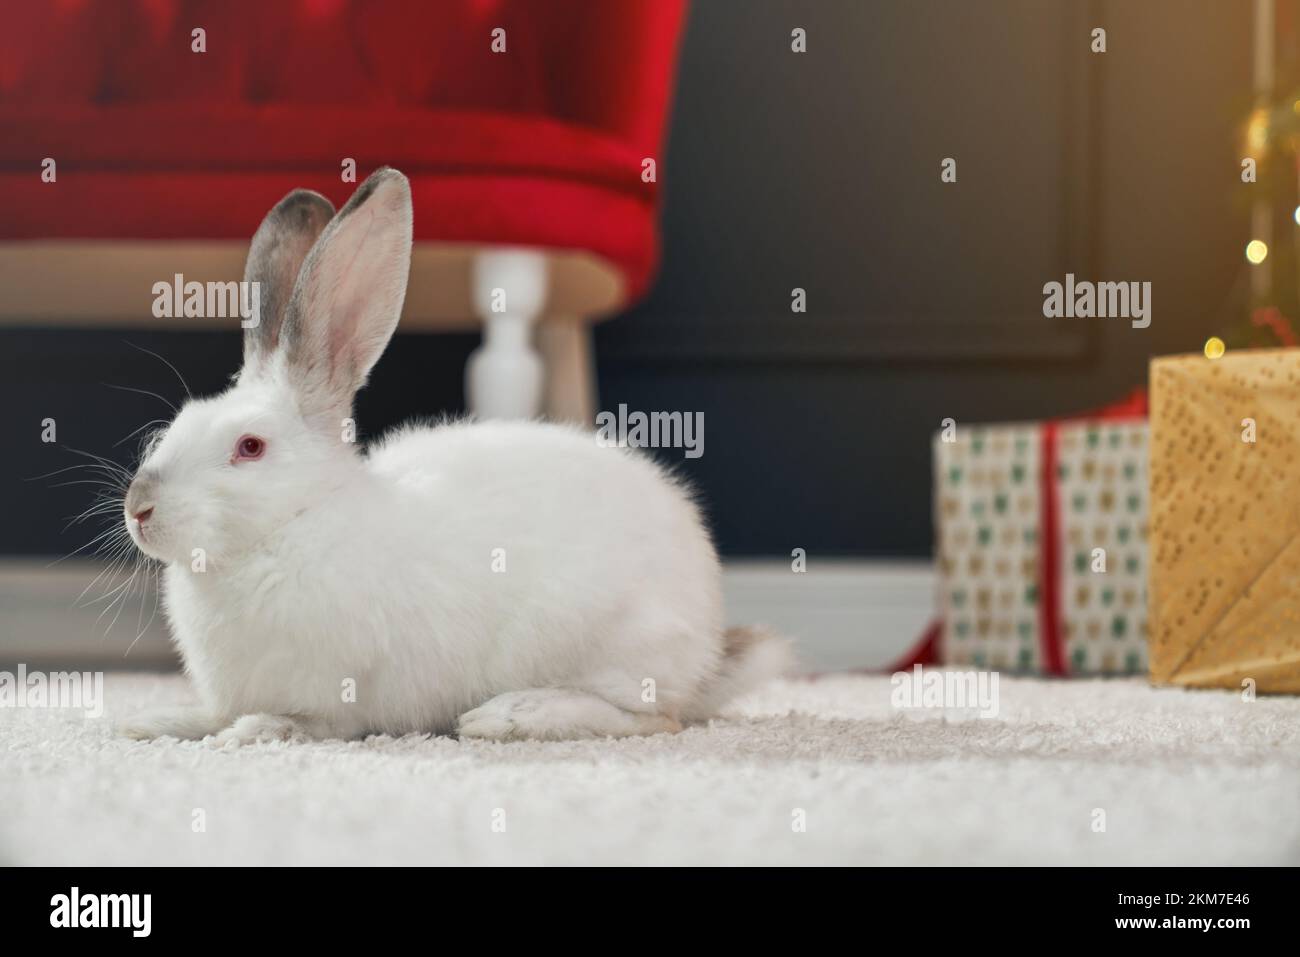 Vue latérale d'un joli lapin en fourrure, assis sur un tapis blanc. Symbole  du nouvel an 2023 ayant photoshoot dans un studio décoré avant le nouvel  an. Concept de vacances et de